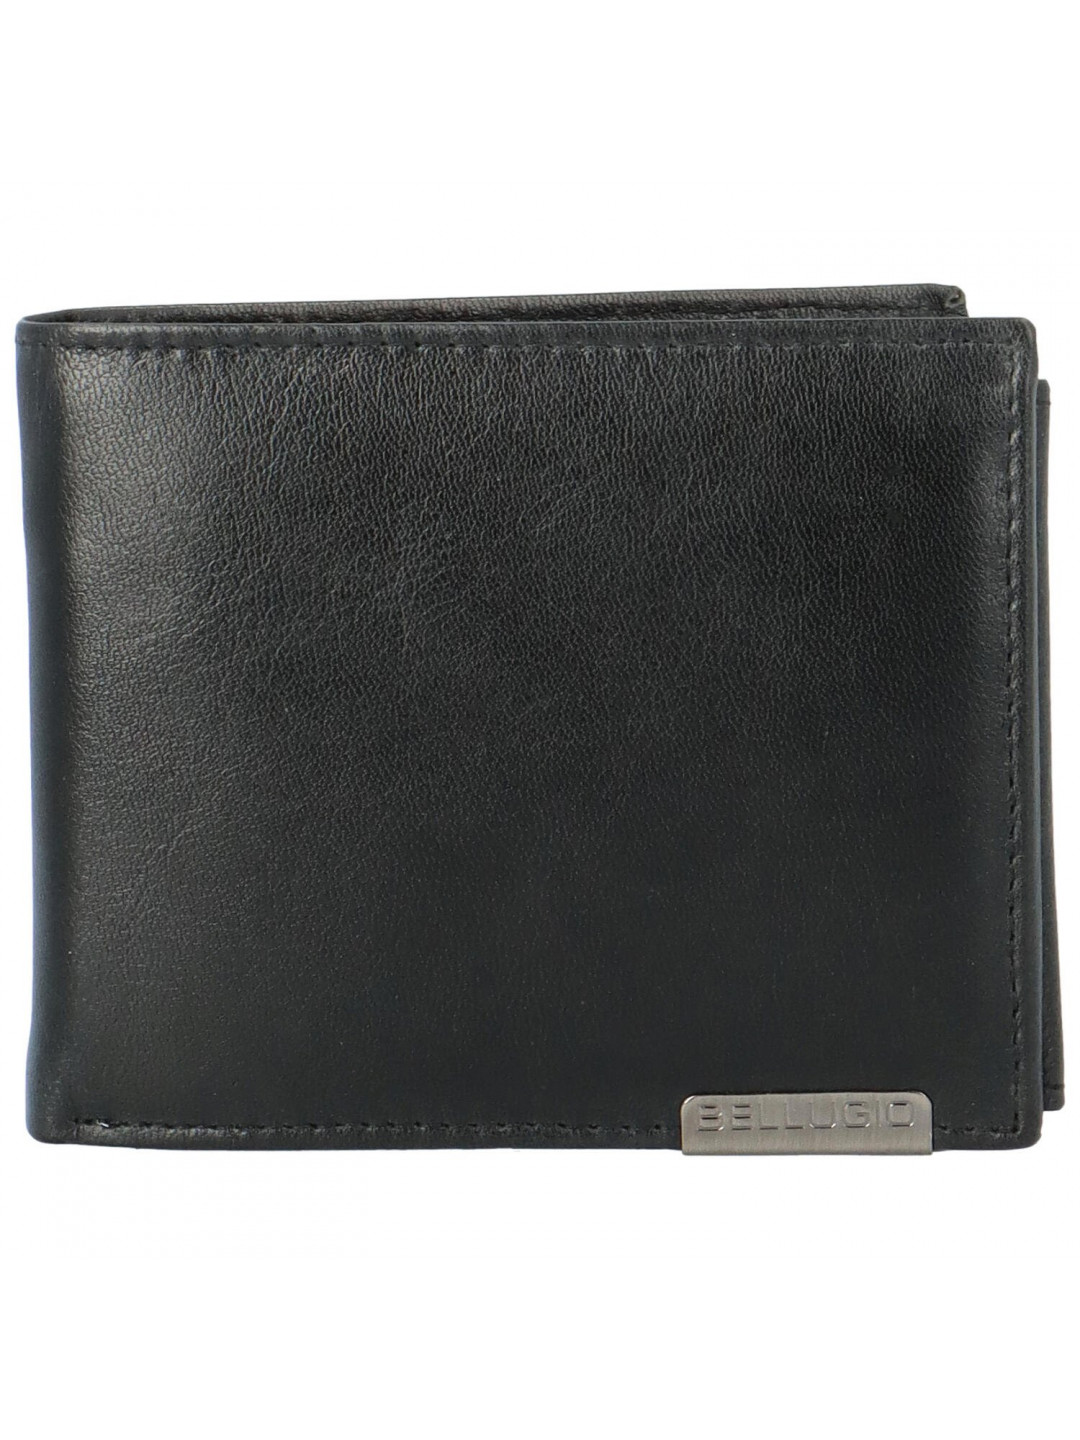 Pánská kožená peněženka Bellugio Mateo černá